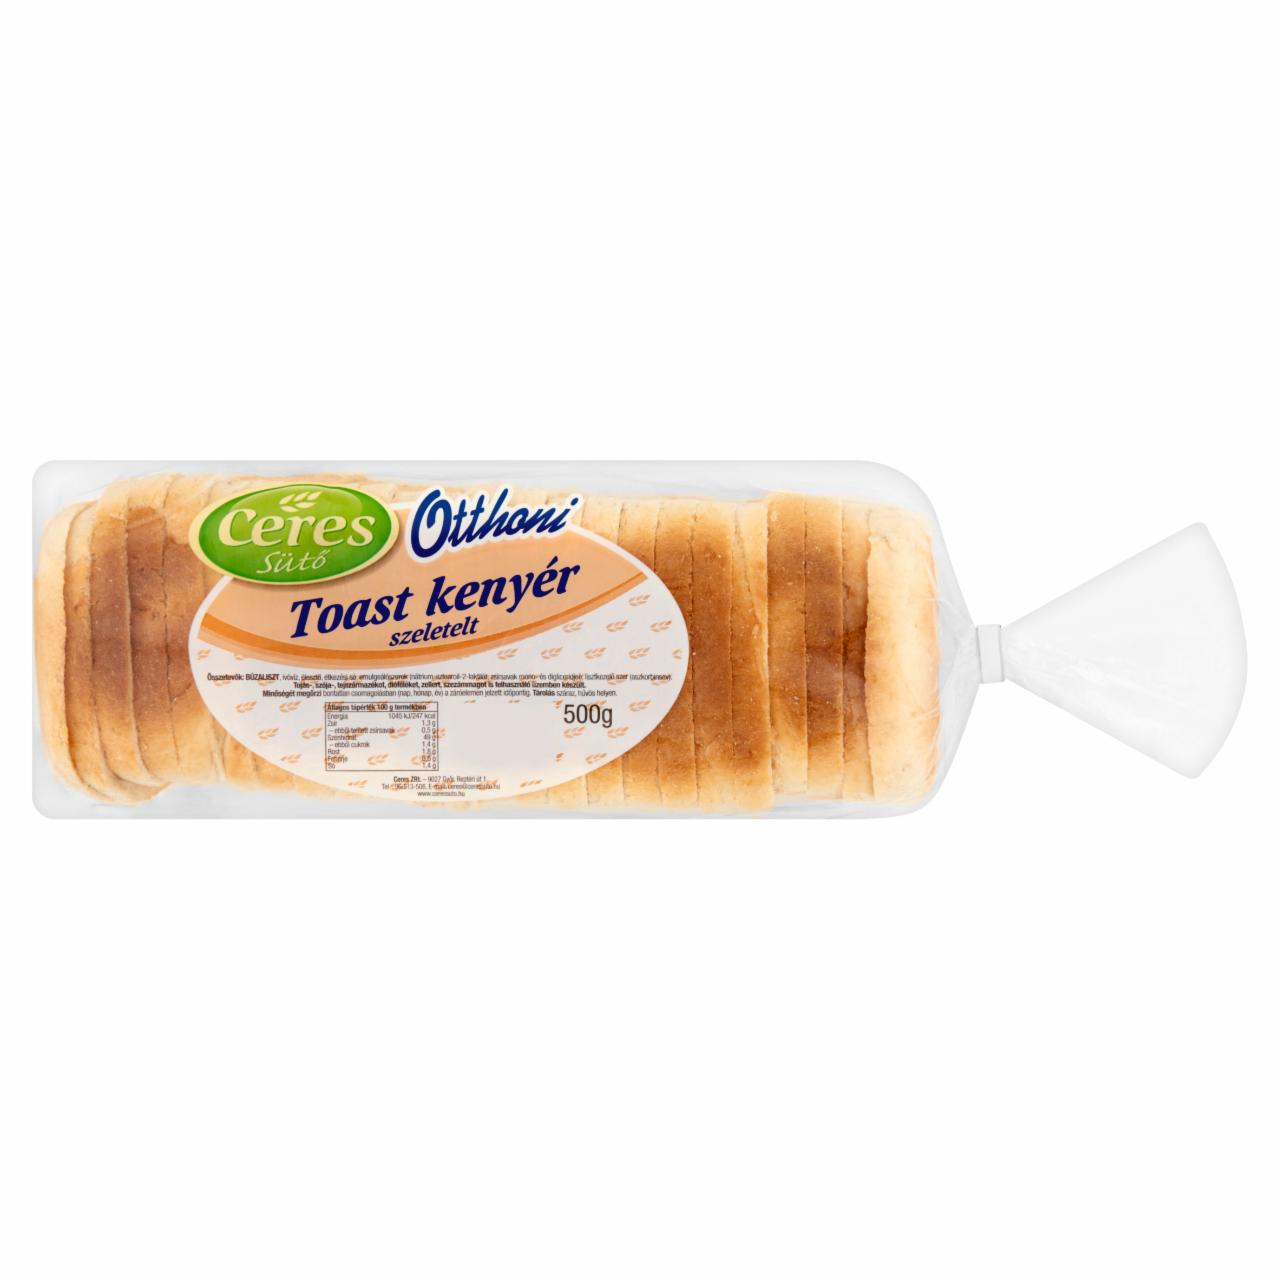 Képek - Ceres Sütő Otthoni szeletelt toast kenyér 500 g